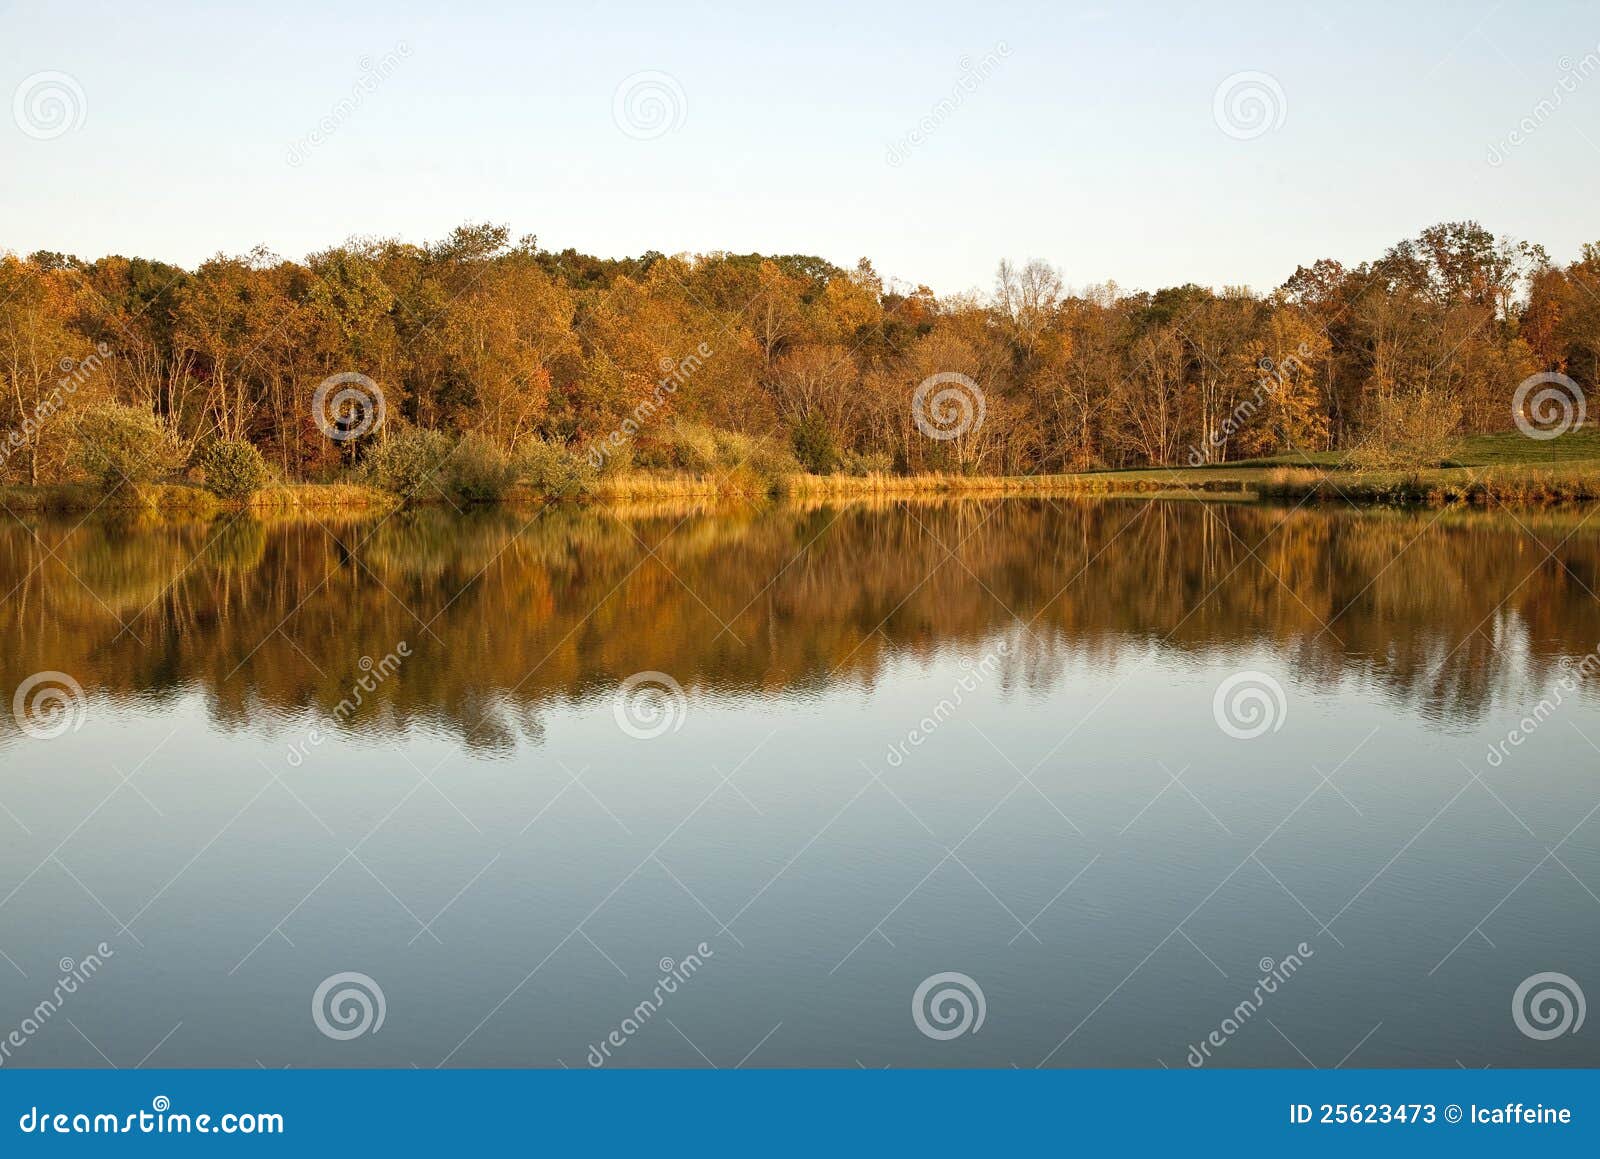 Herbst-Landschaftwald mit See und Reflexion